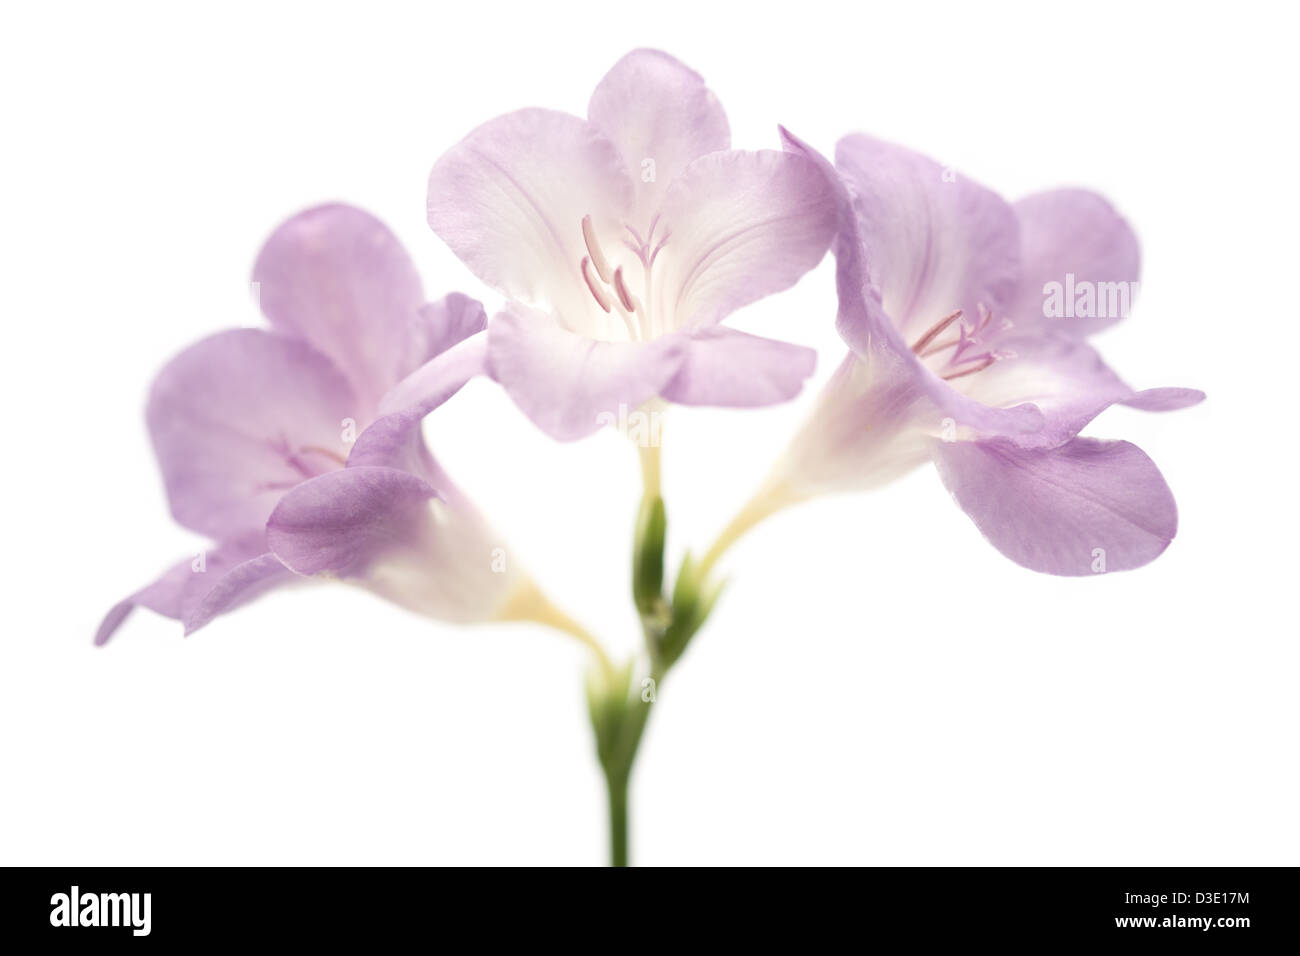 Schließen Sie herauf Bild lila / violett Fresia Blumen auf weißem Hintergrund. Stockfoto